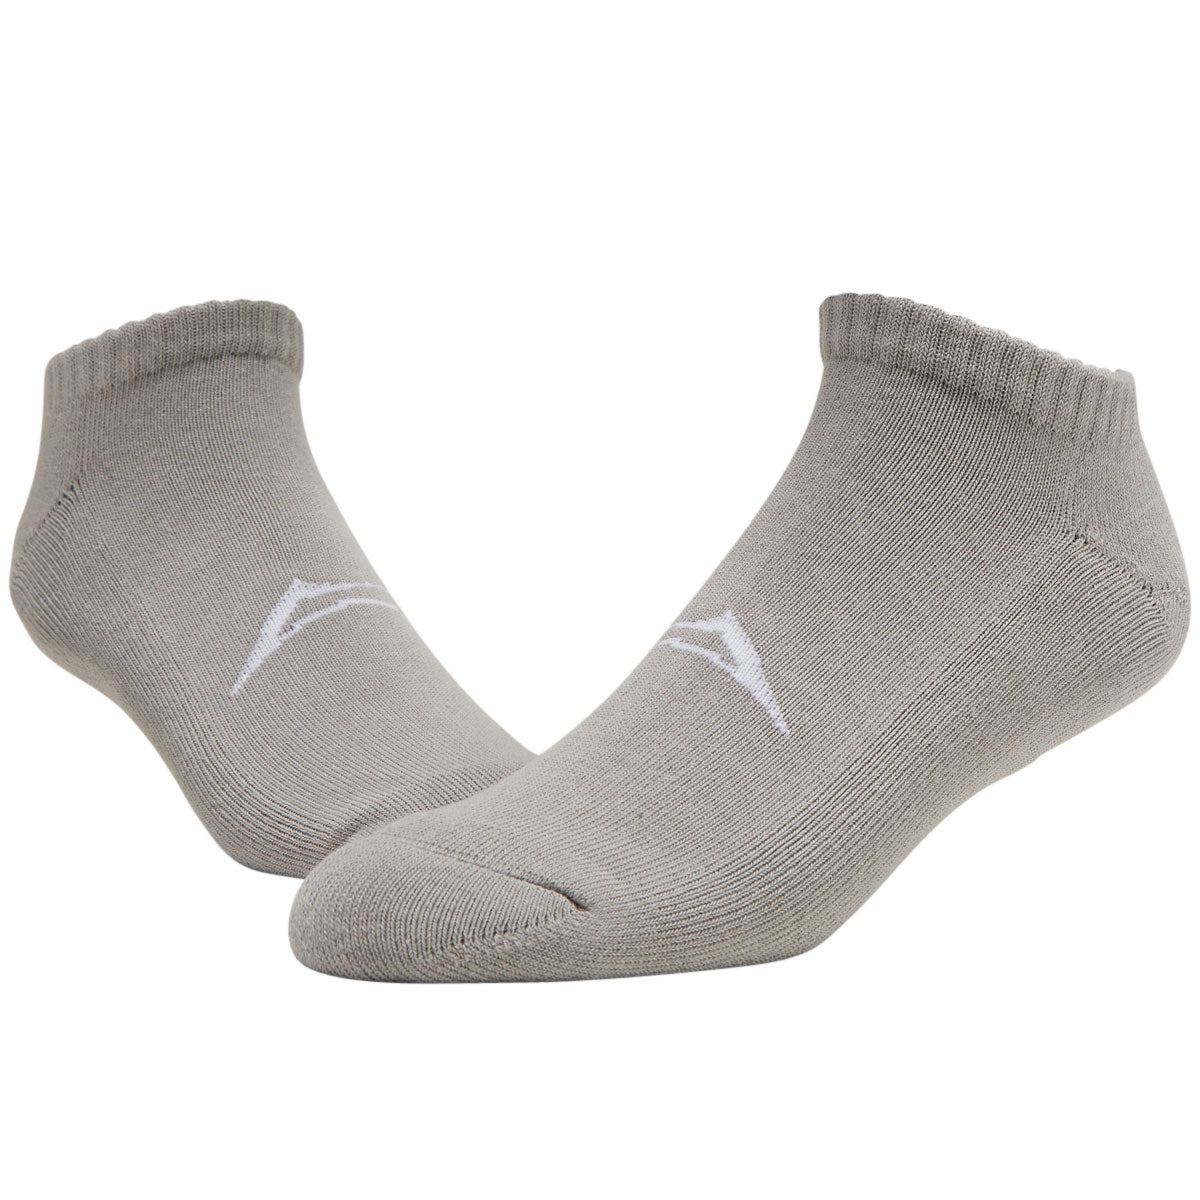 Lakai Hidden Socks - Charcoal image 2